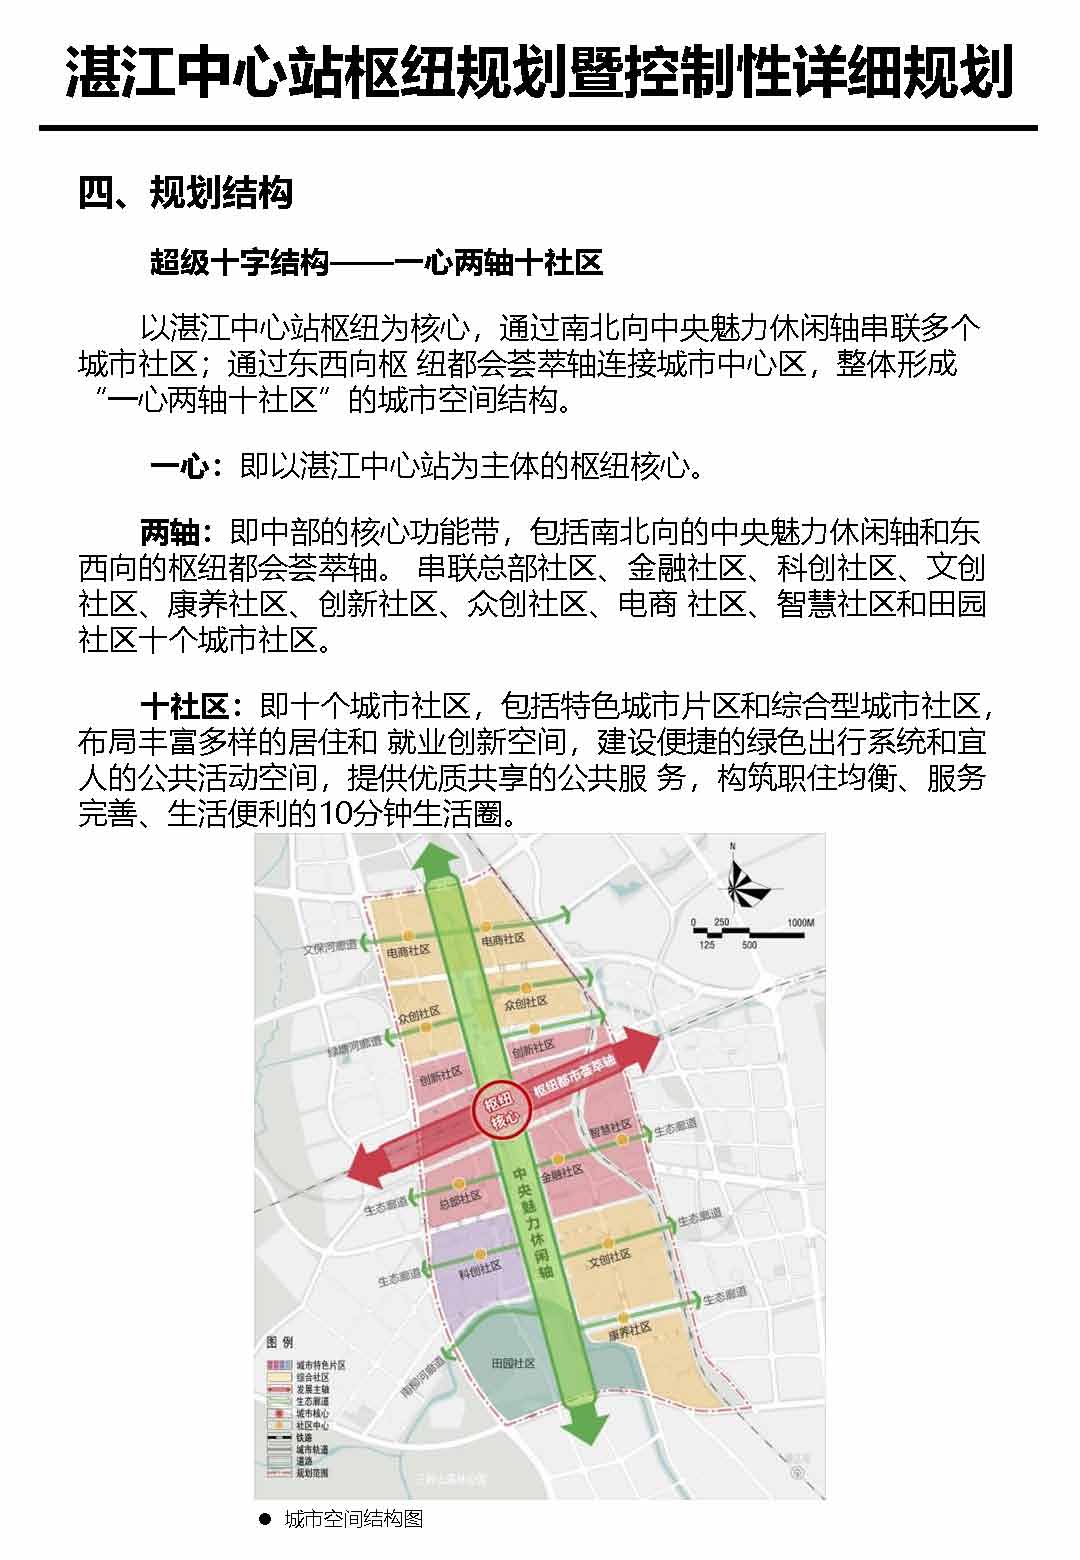 湛江市中心枢纽地区规划暨控制线详细规划报批后公告_页面_6.jpg